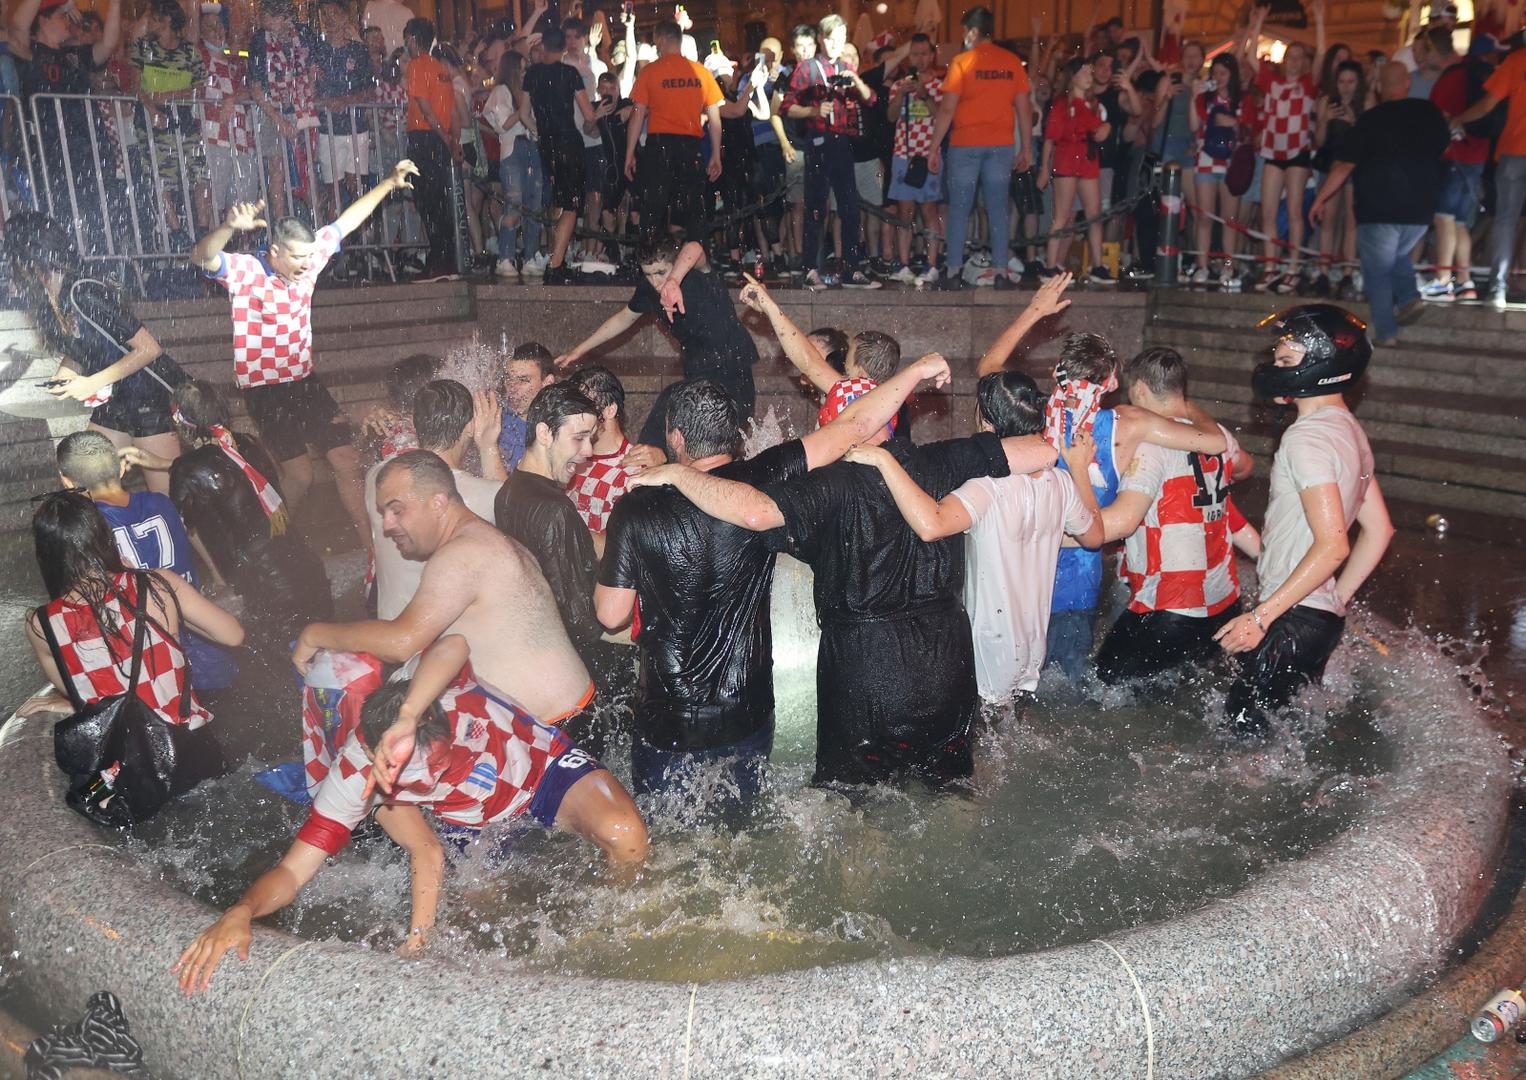 Nakon pobjede u Glasgowu, navijači na Trgu bana Josipa Jelačića u Zagrebu skakali su u Manduševac.